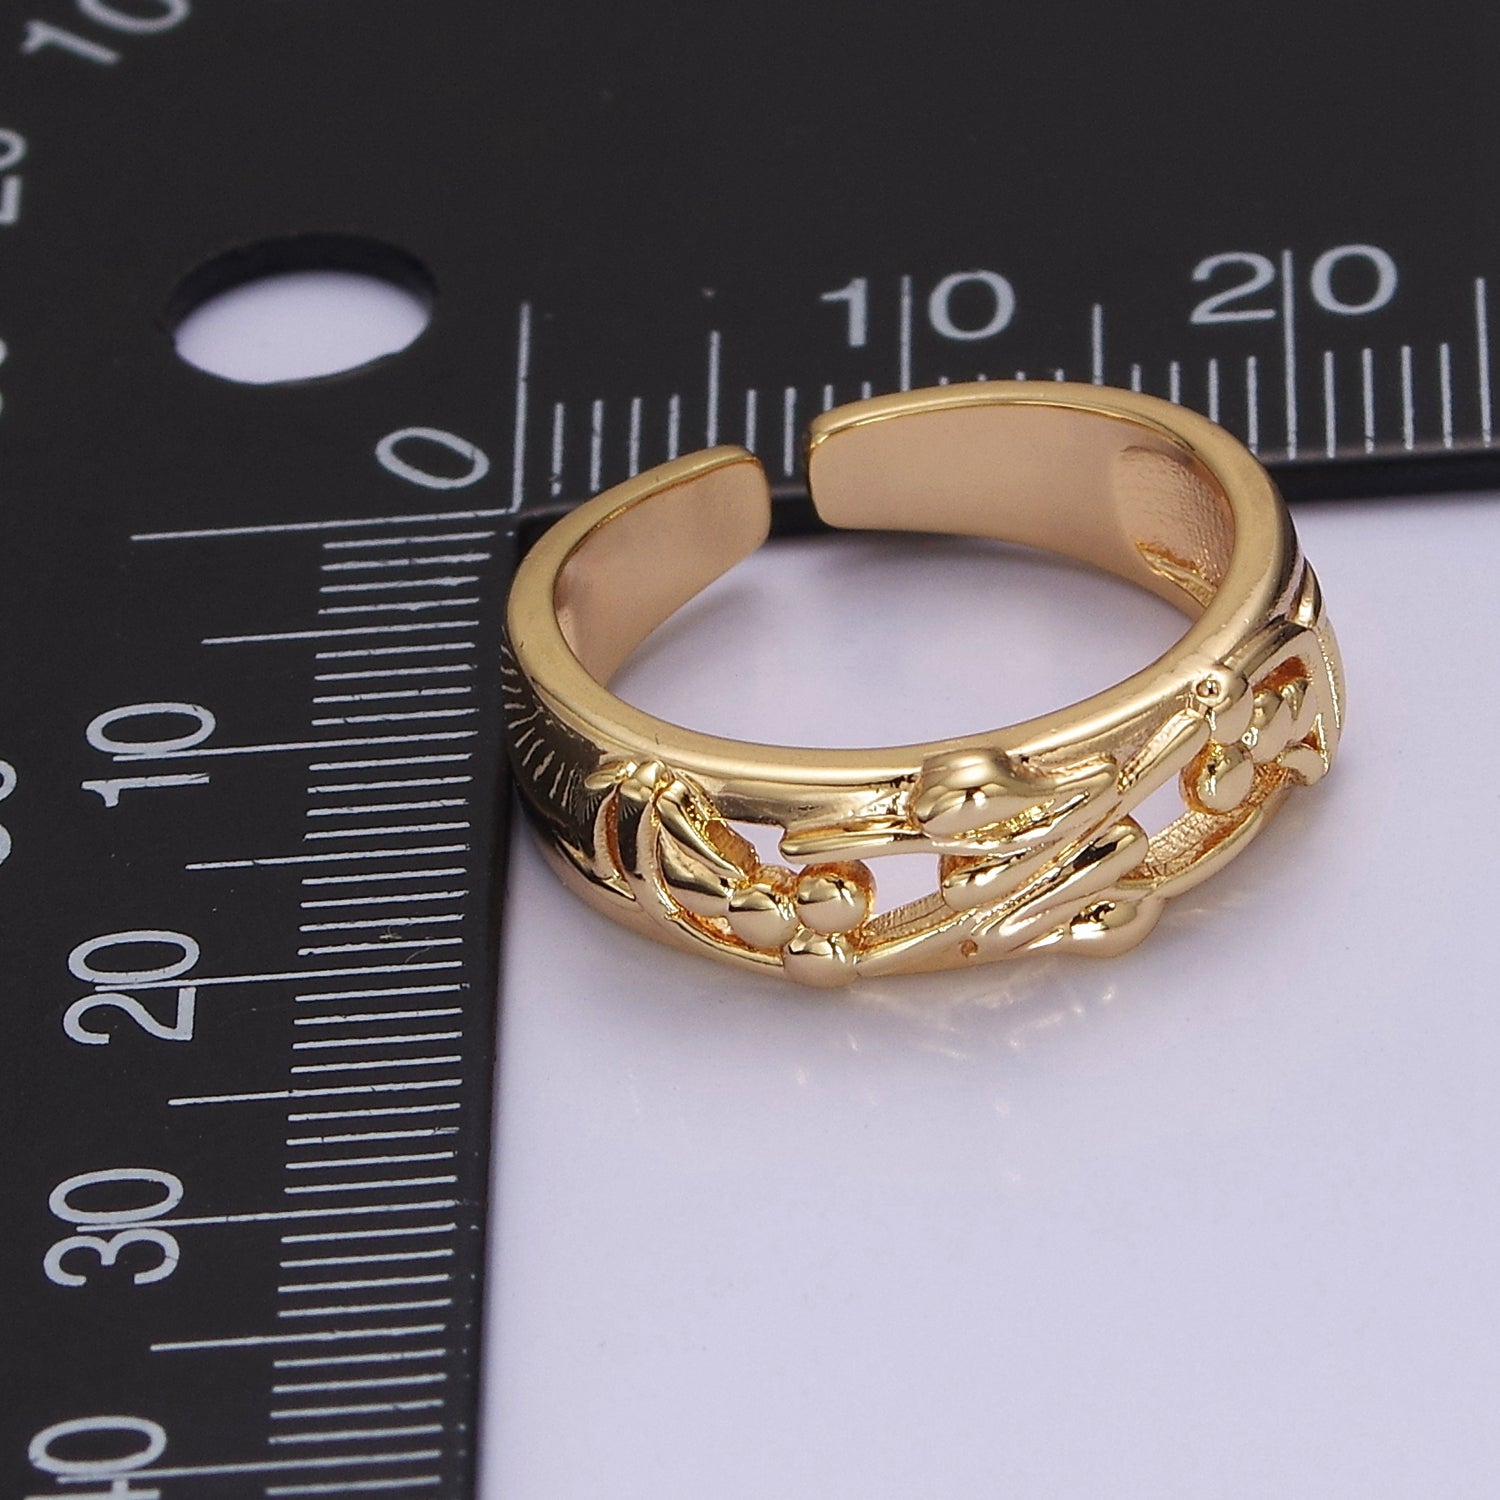 Dainty Art Deco Ring Flower Carved Design 18k Gold Filled Open Adjustable Ring V-226 - DLUXCA